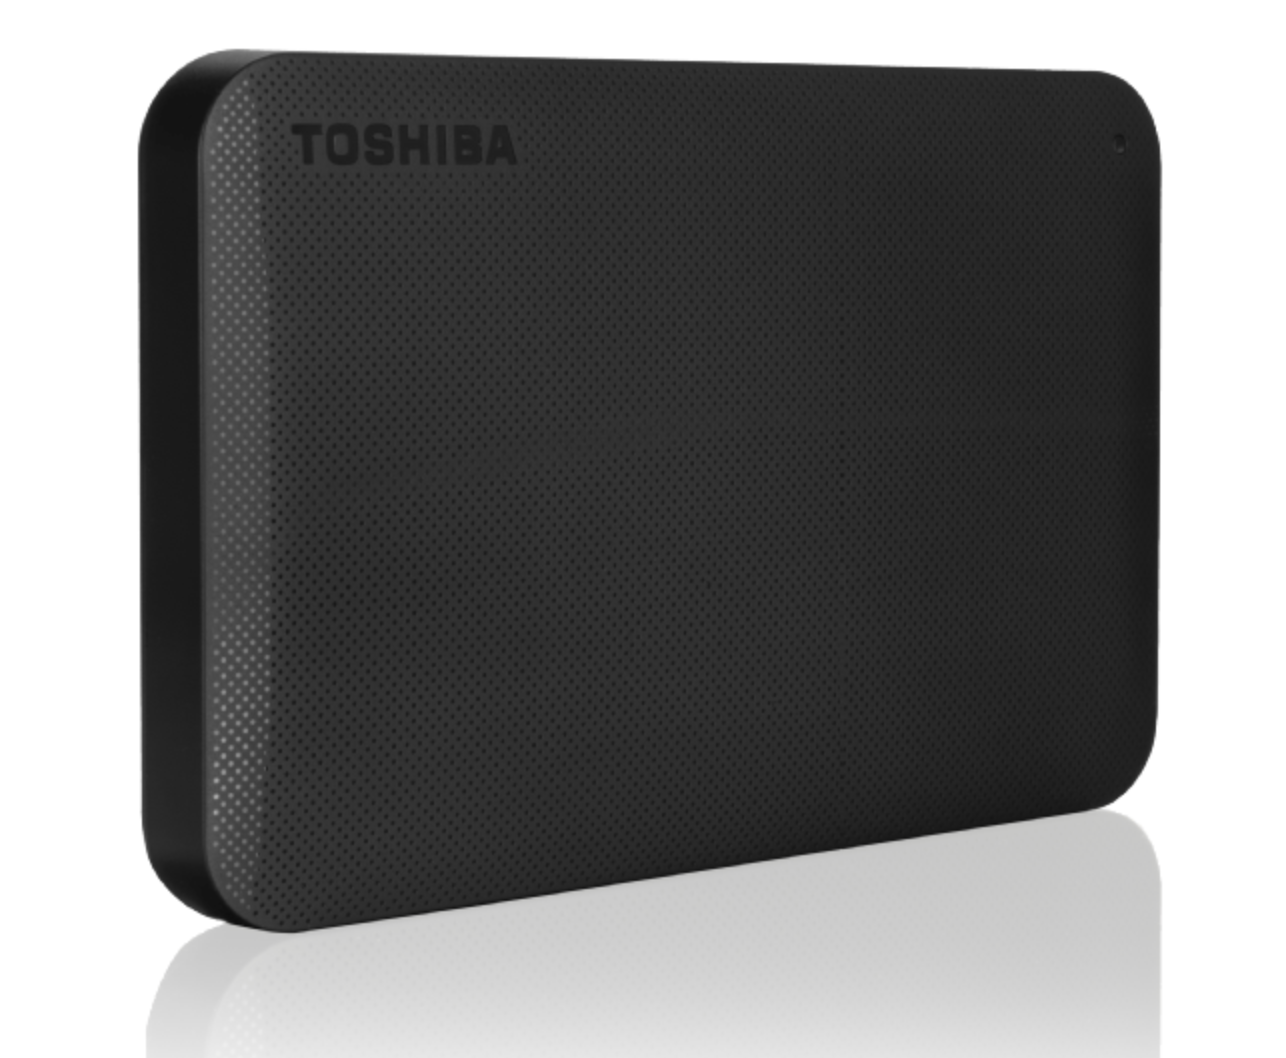 TOSHIBA Canvio Ready externe 2.5 Zoll Festplatte mit 2 TB für nur 59,- Euro inkl. Versand